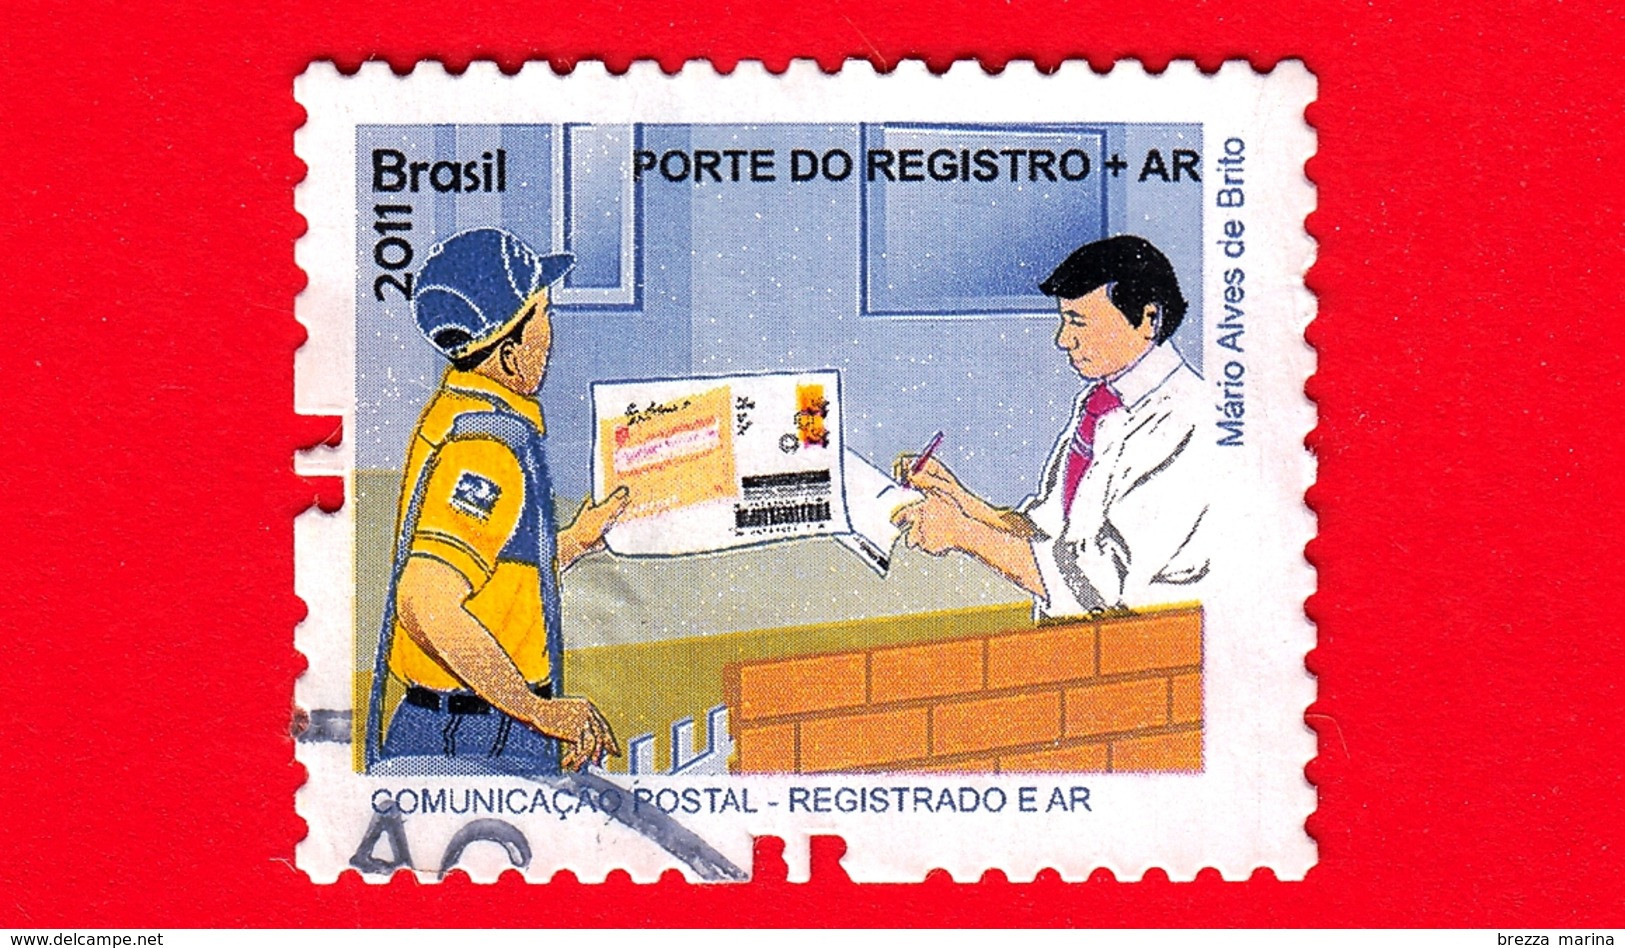 BRASILE - Usato - 2011 - Prodotti E Servizi Postali - Post Office - Porte Do Registro + AR - No Valore Facciale - Usados